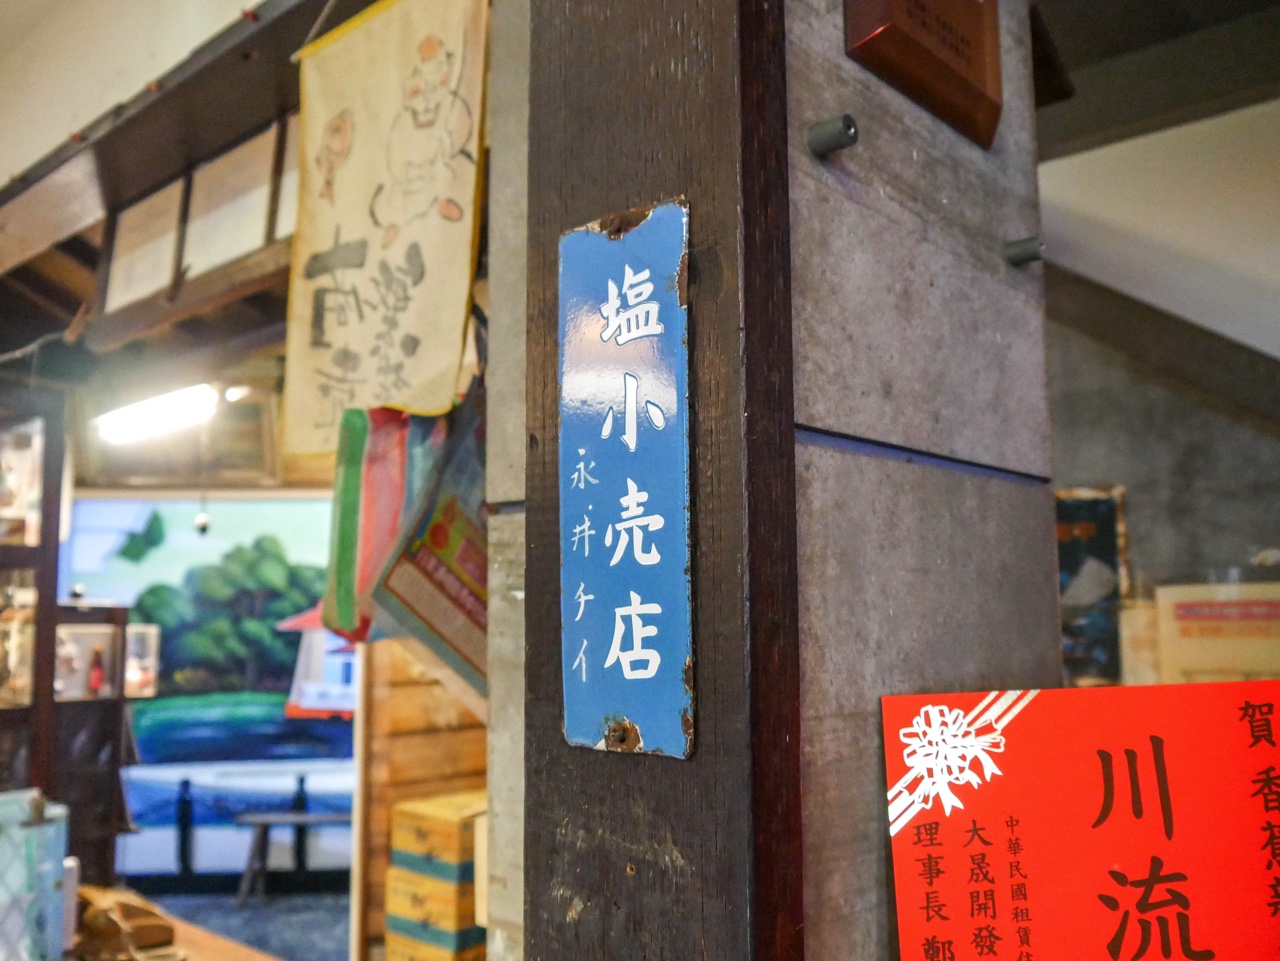 当時の日本人が台湾で経営していたお店の表札